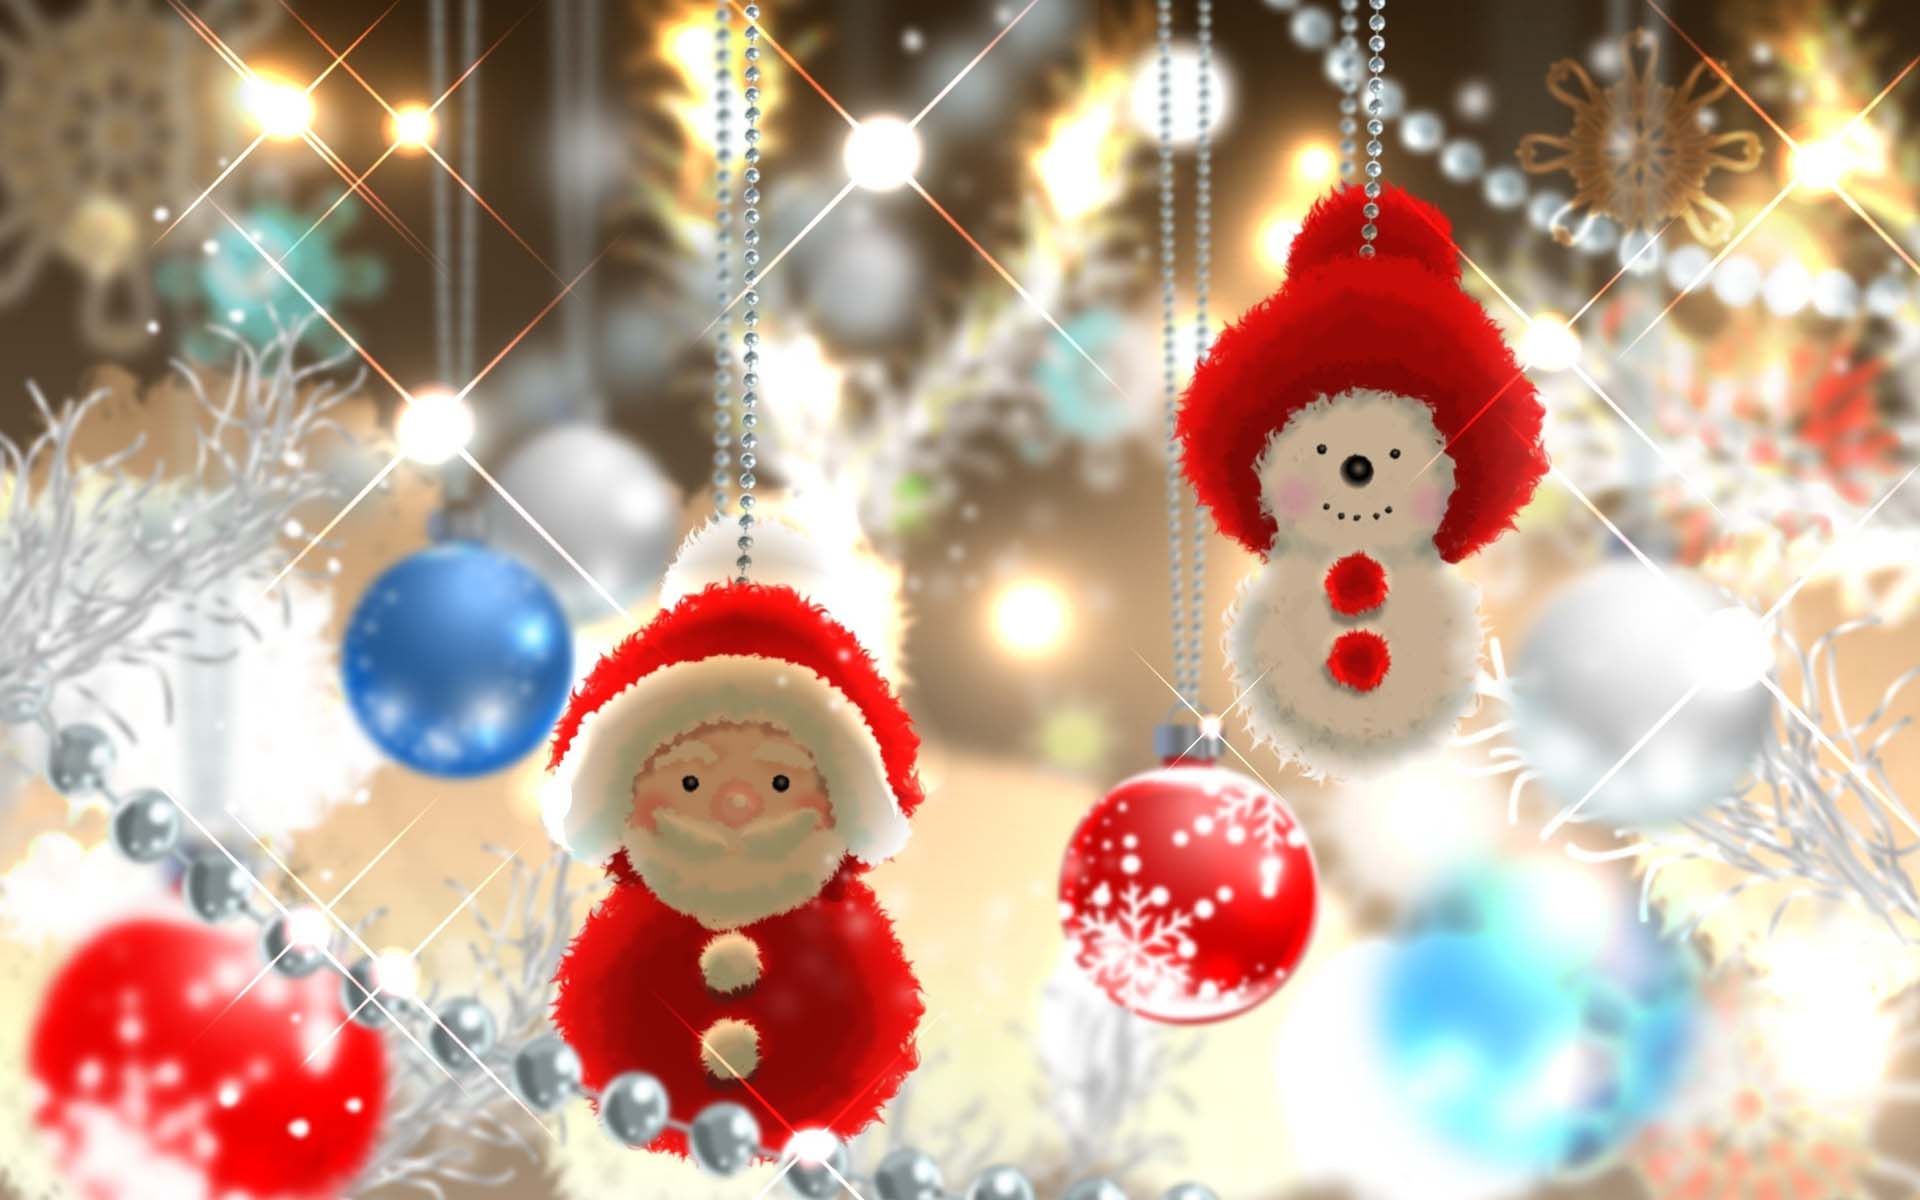 Hình nền giáng sinh đẹp  Background giáng sinh 2019 hình nền Noel đẹp  nhất  5  Merry christmas wallpaper Merry christmas wishes text Merry  christmas images